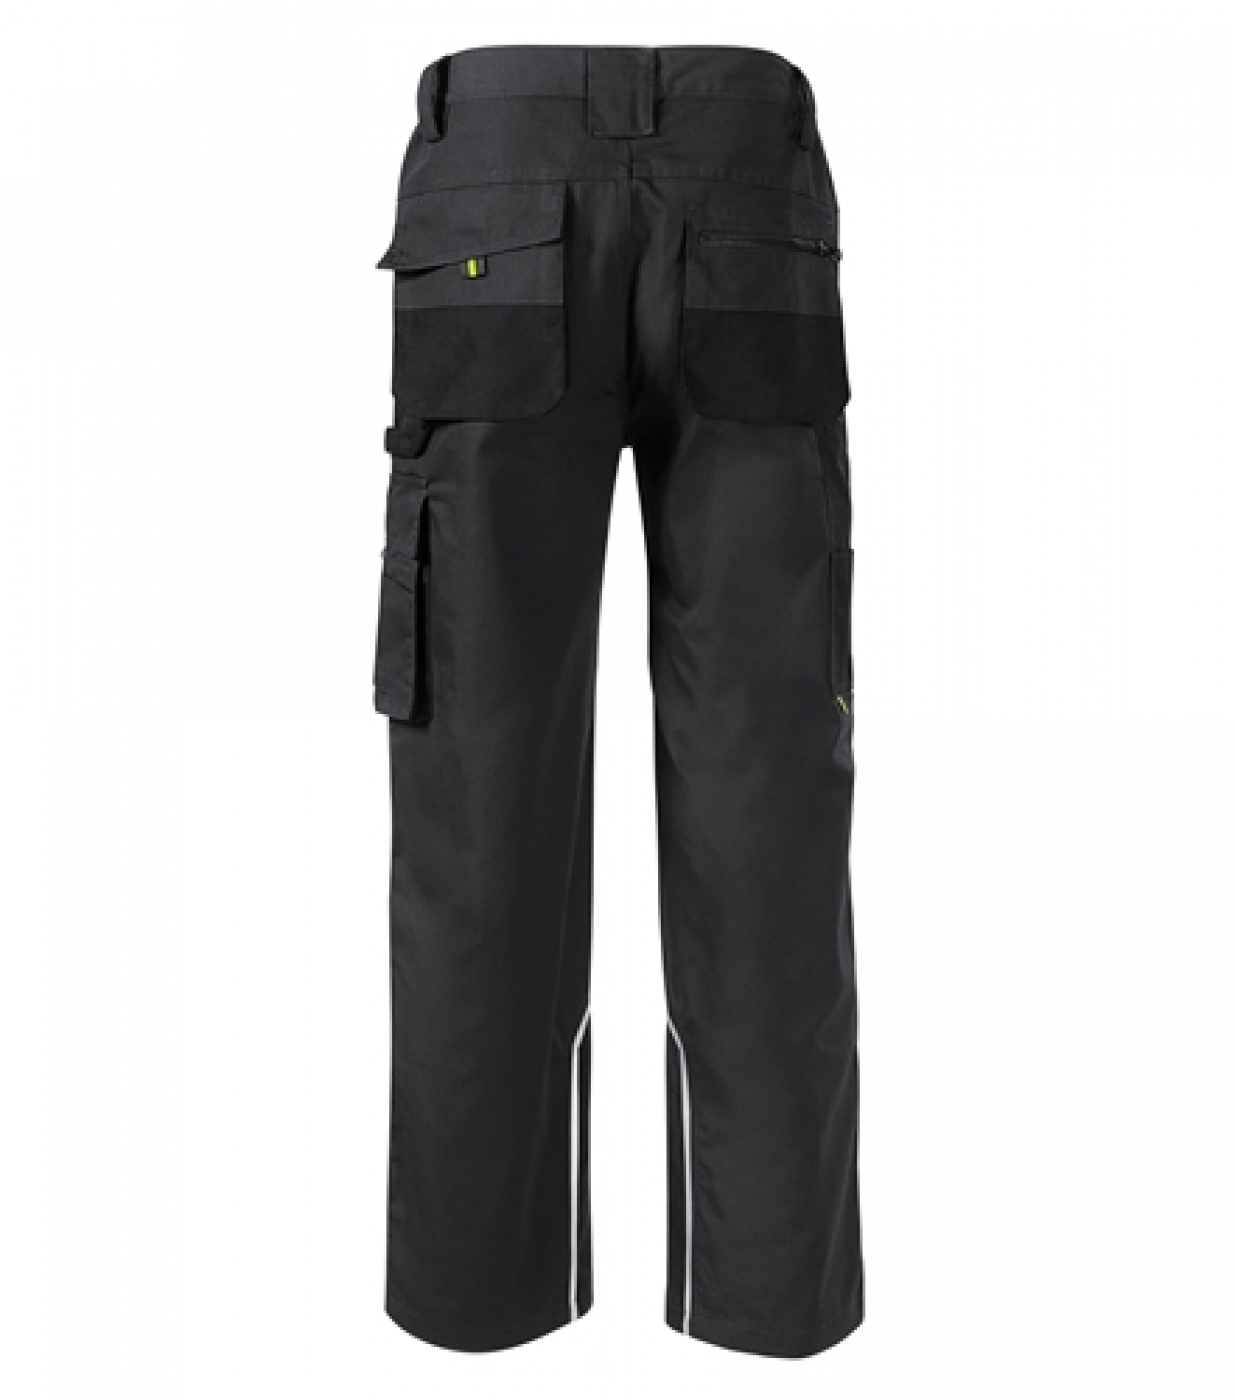 Uniforme Protectie â€“ Pantaloni lucru barbati, cu buzunare, material CORDURA